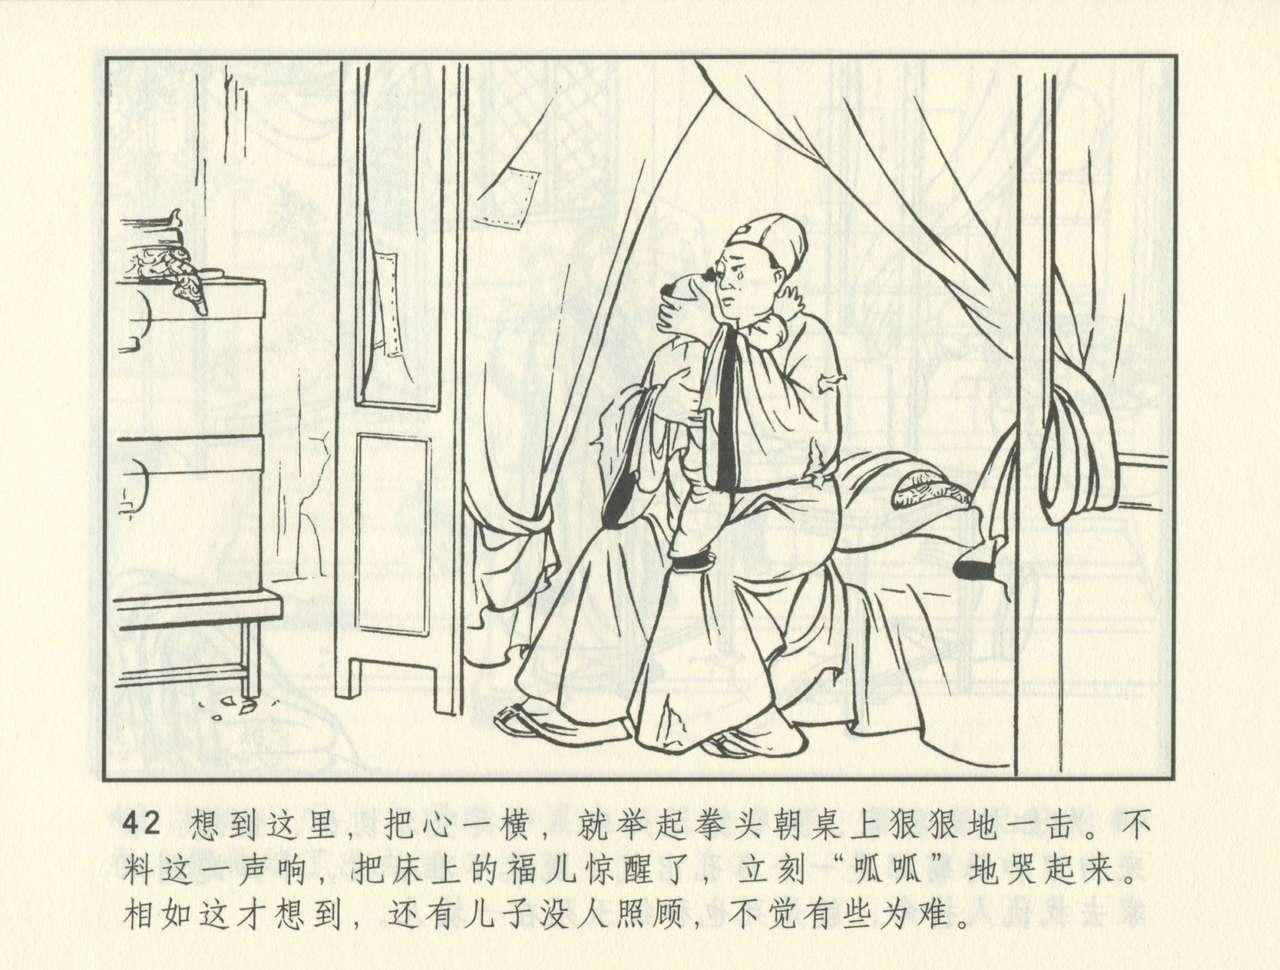 聊斋志异 张玮等绘 天津人民美术出版社 卷二十一 ~ 三十 382